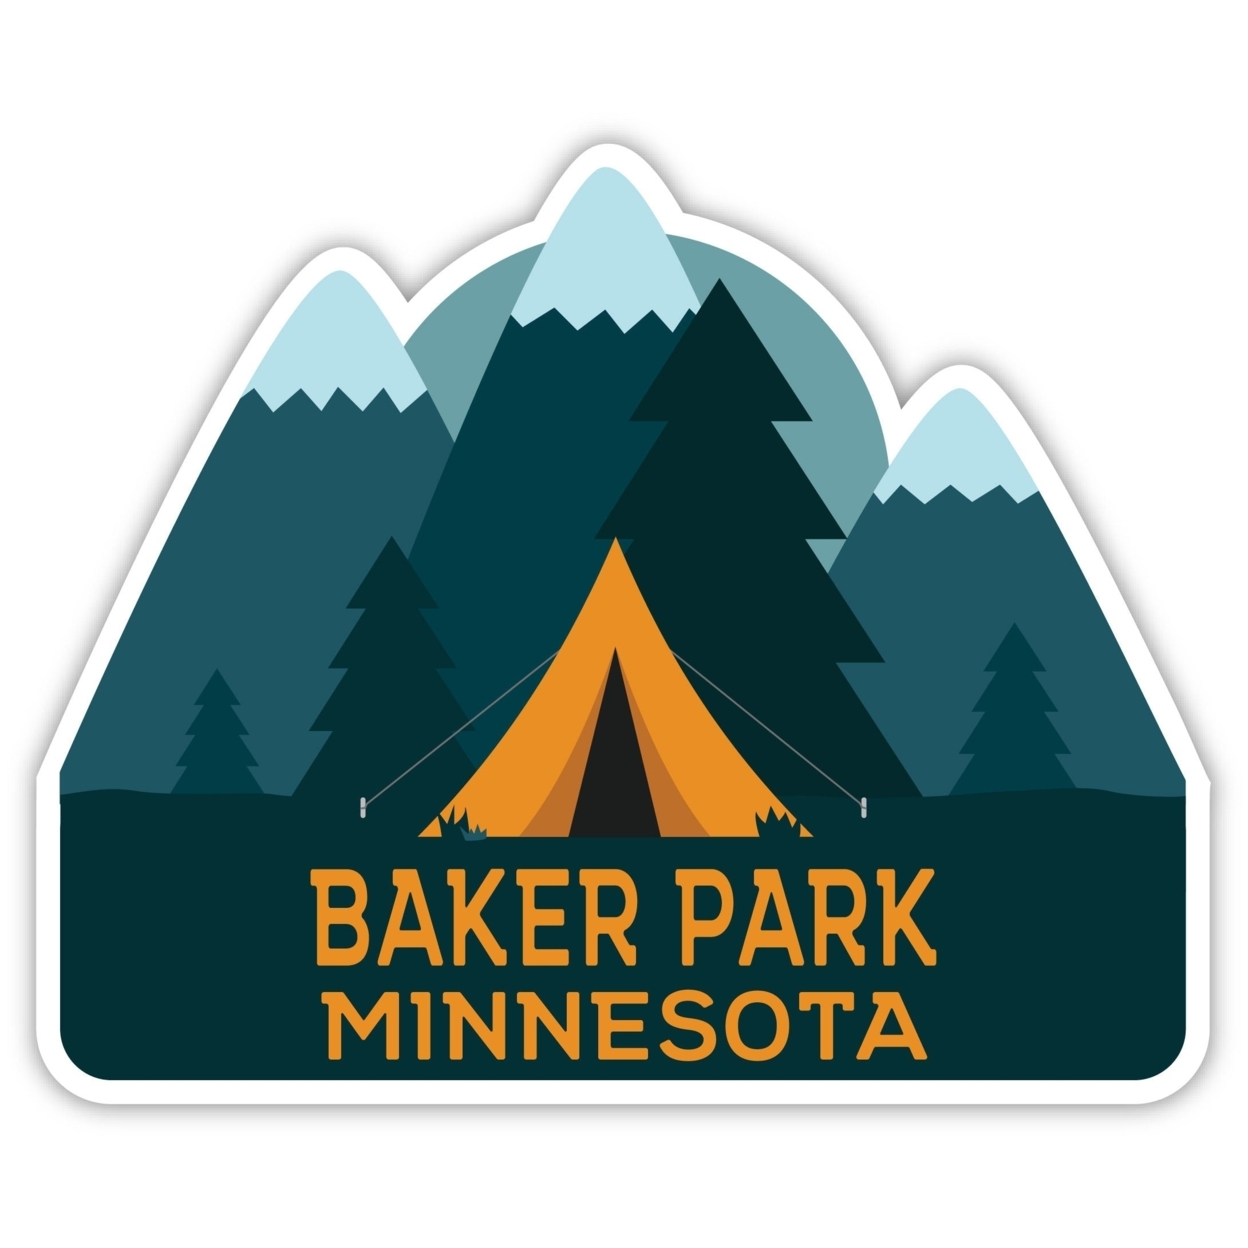 Baker Park Minnesota Souvenir Decorative Stickers (Choose Theme And Size) - Single Unit, 10-Inch, Tent